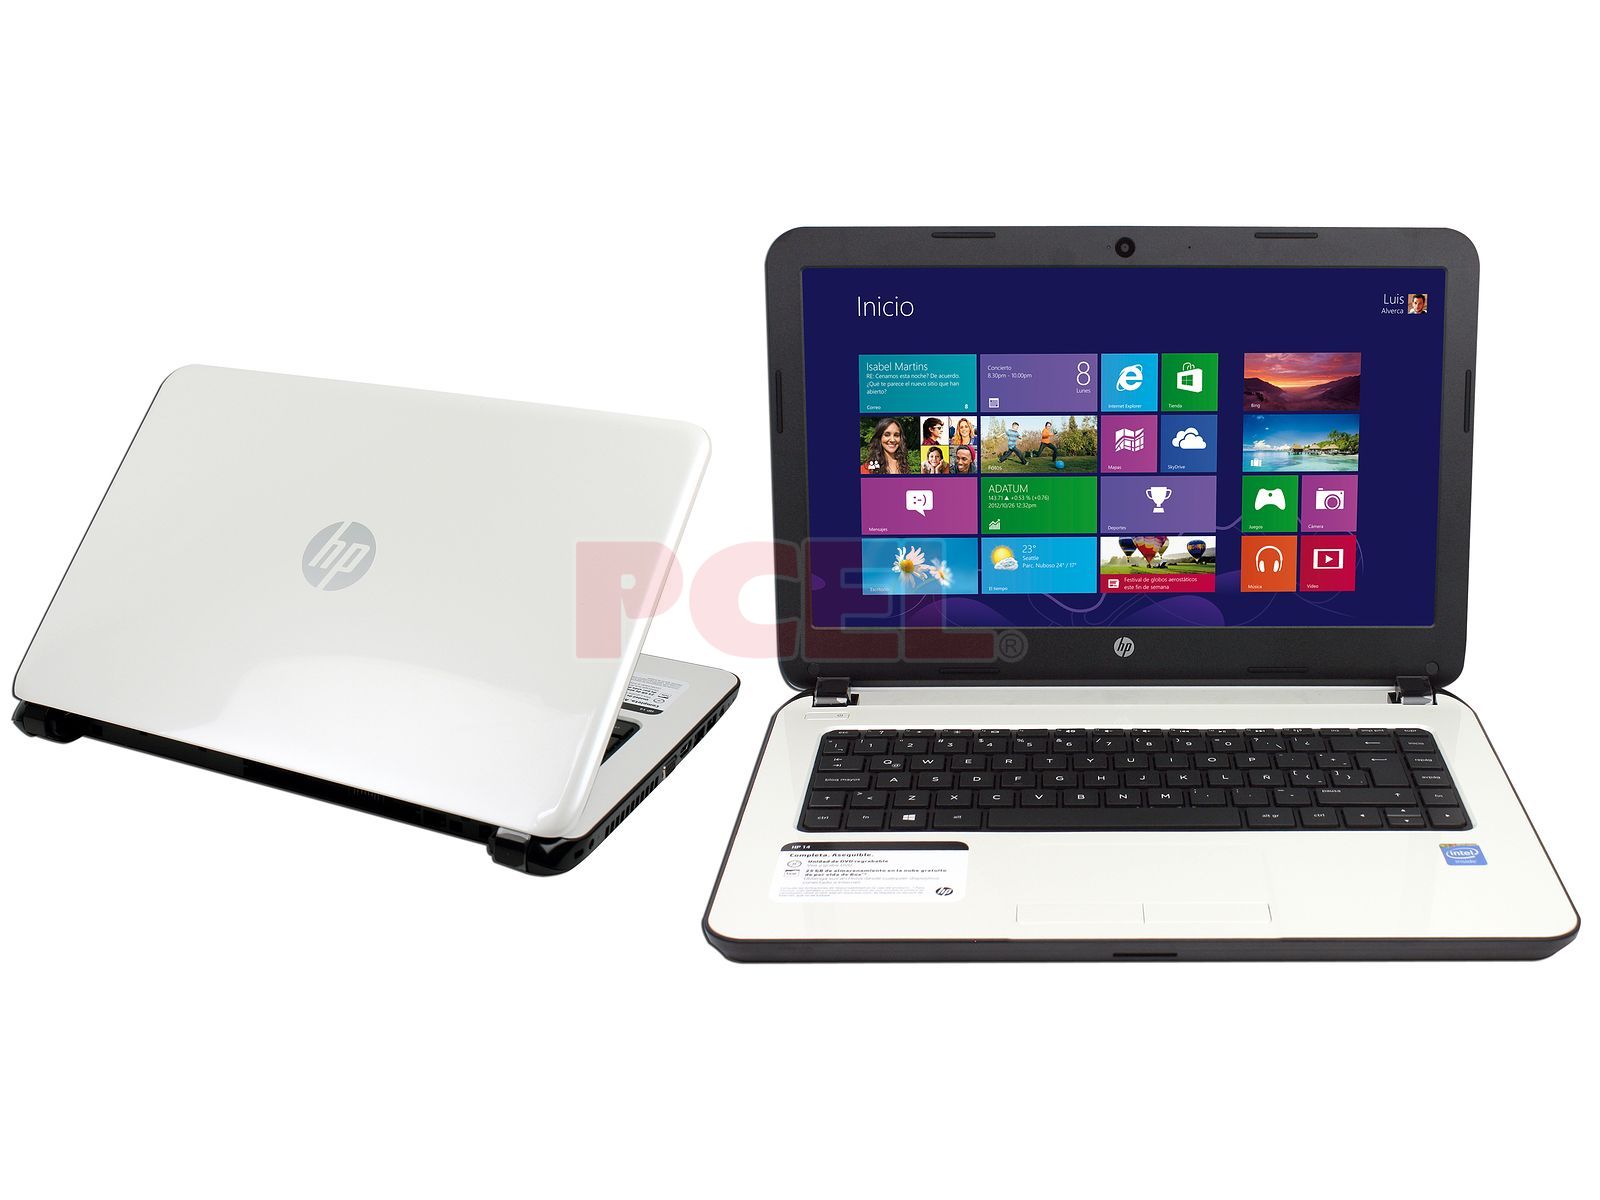 Laptop HP 14-r016la: Procesador Intel Celeron N2815 (hasta  GHz),  Memoria de 4 GB DDR3, D. D. de 500 GB, Pantalla LED de 14